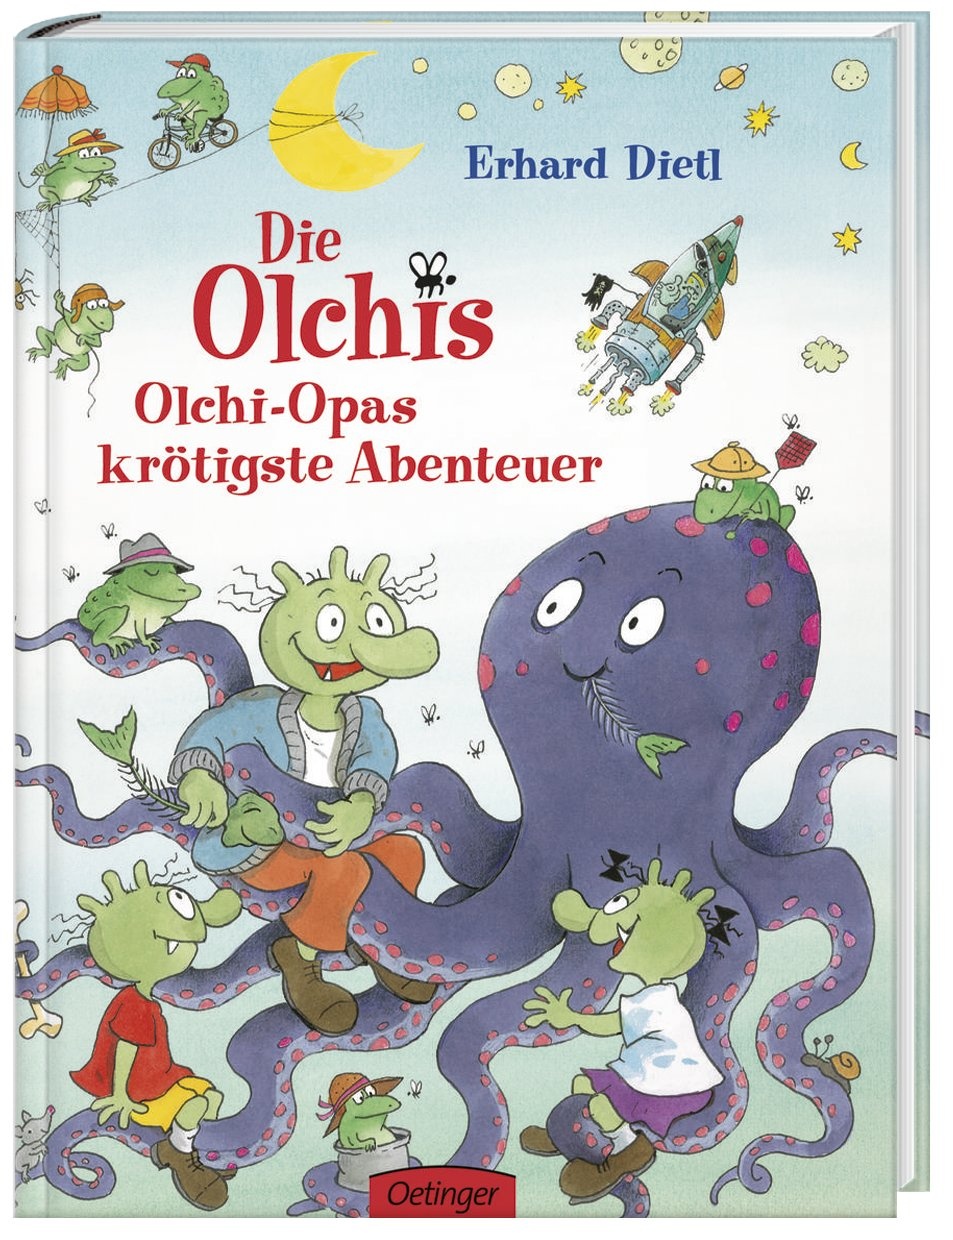 Olchi-Opas Krötigste Abenteuer / Die Olchis Bd.5 - Erhard Dietl  Gebunden